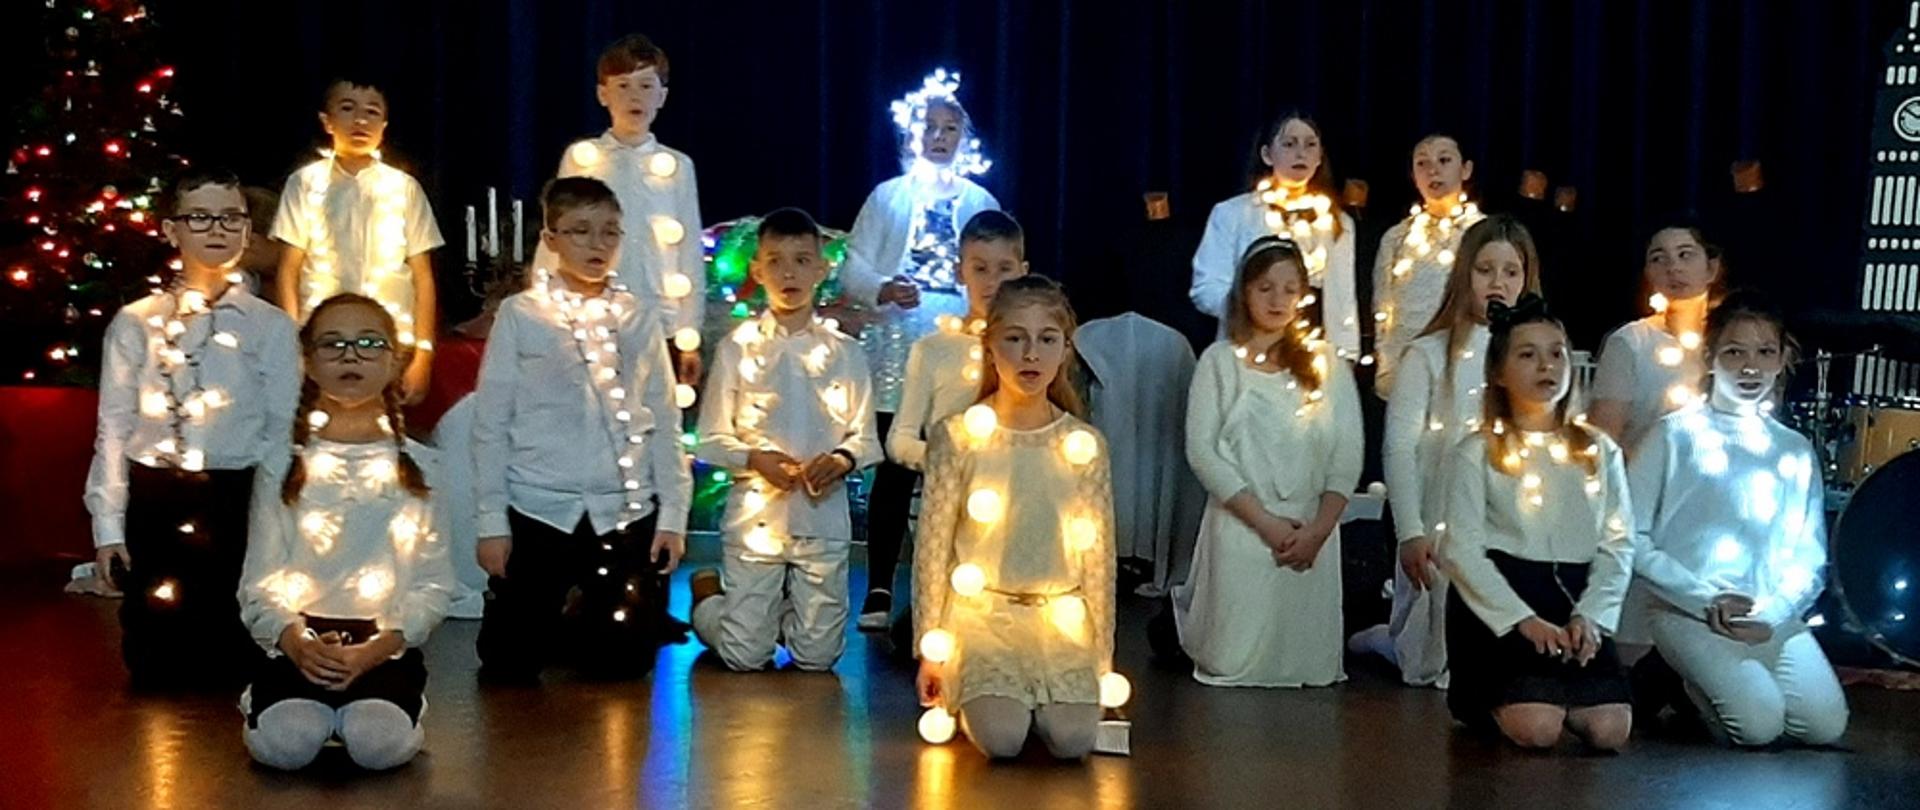 Zdjęcie wykonane w sali koncertowej szkoły na tle scenografii "Opowieść wigilijna". Uczniowie ubrani w stroje białe lub biało-czarne, przyozdobieni światełkami.